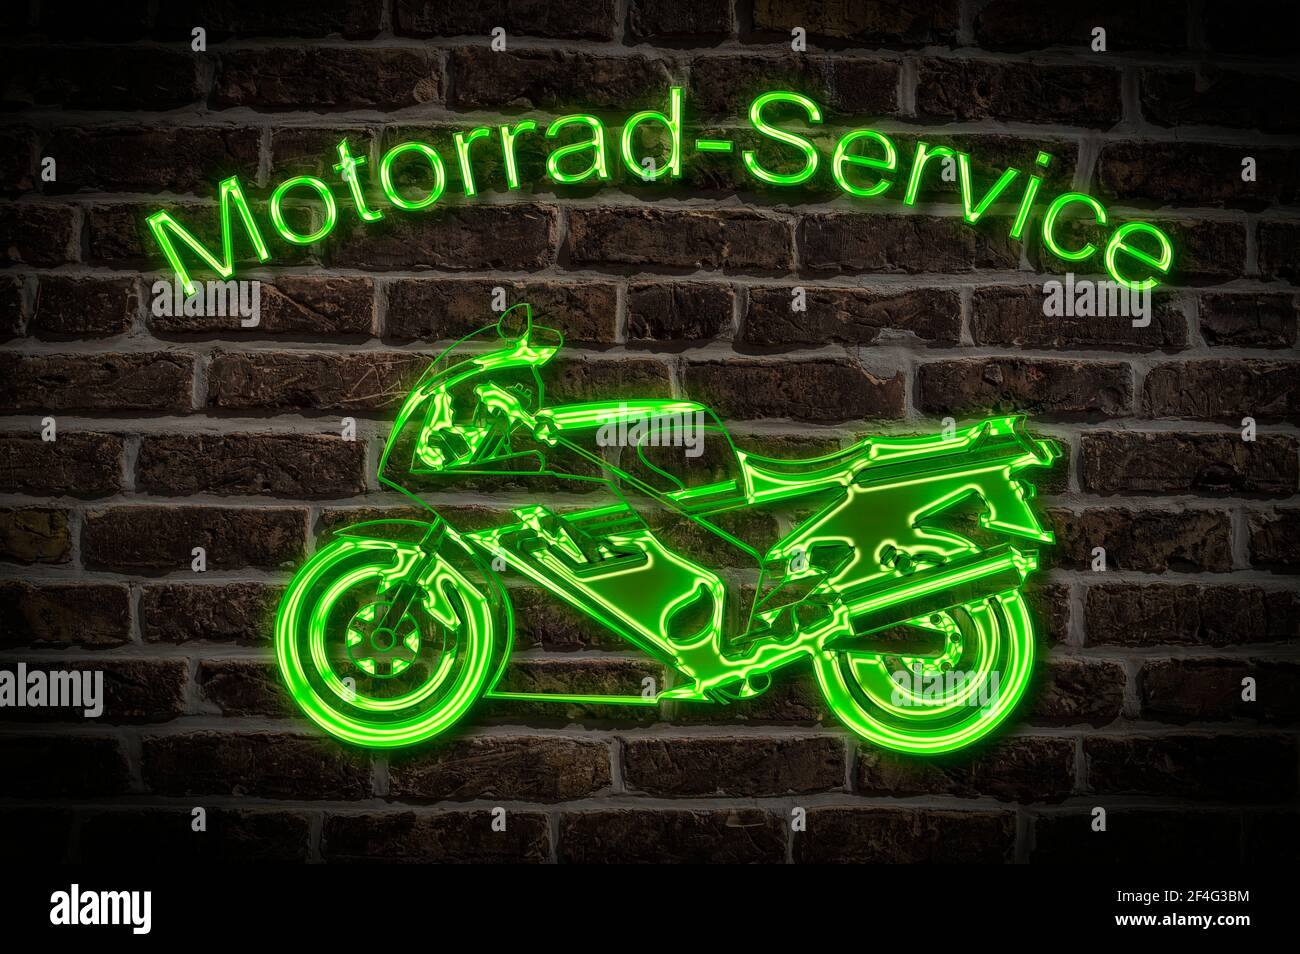 Leuchtreklame für einen Motorrad-Service ein Motorrad befindet sich  unterhalb der Neon-Schrift | Illuminated advertisement for a Motorbike  service a M Stock Photo - Alamy